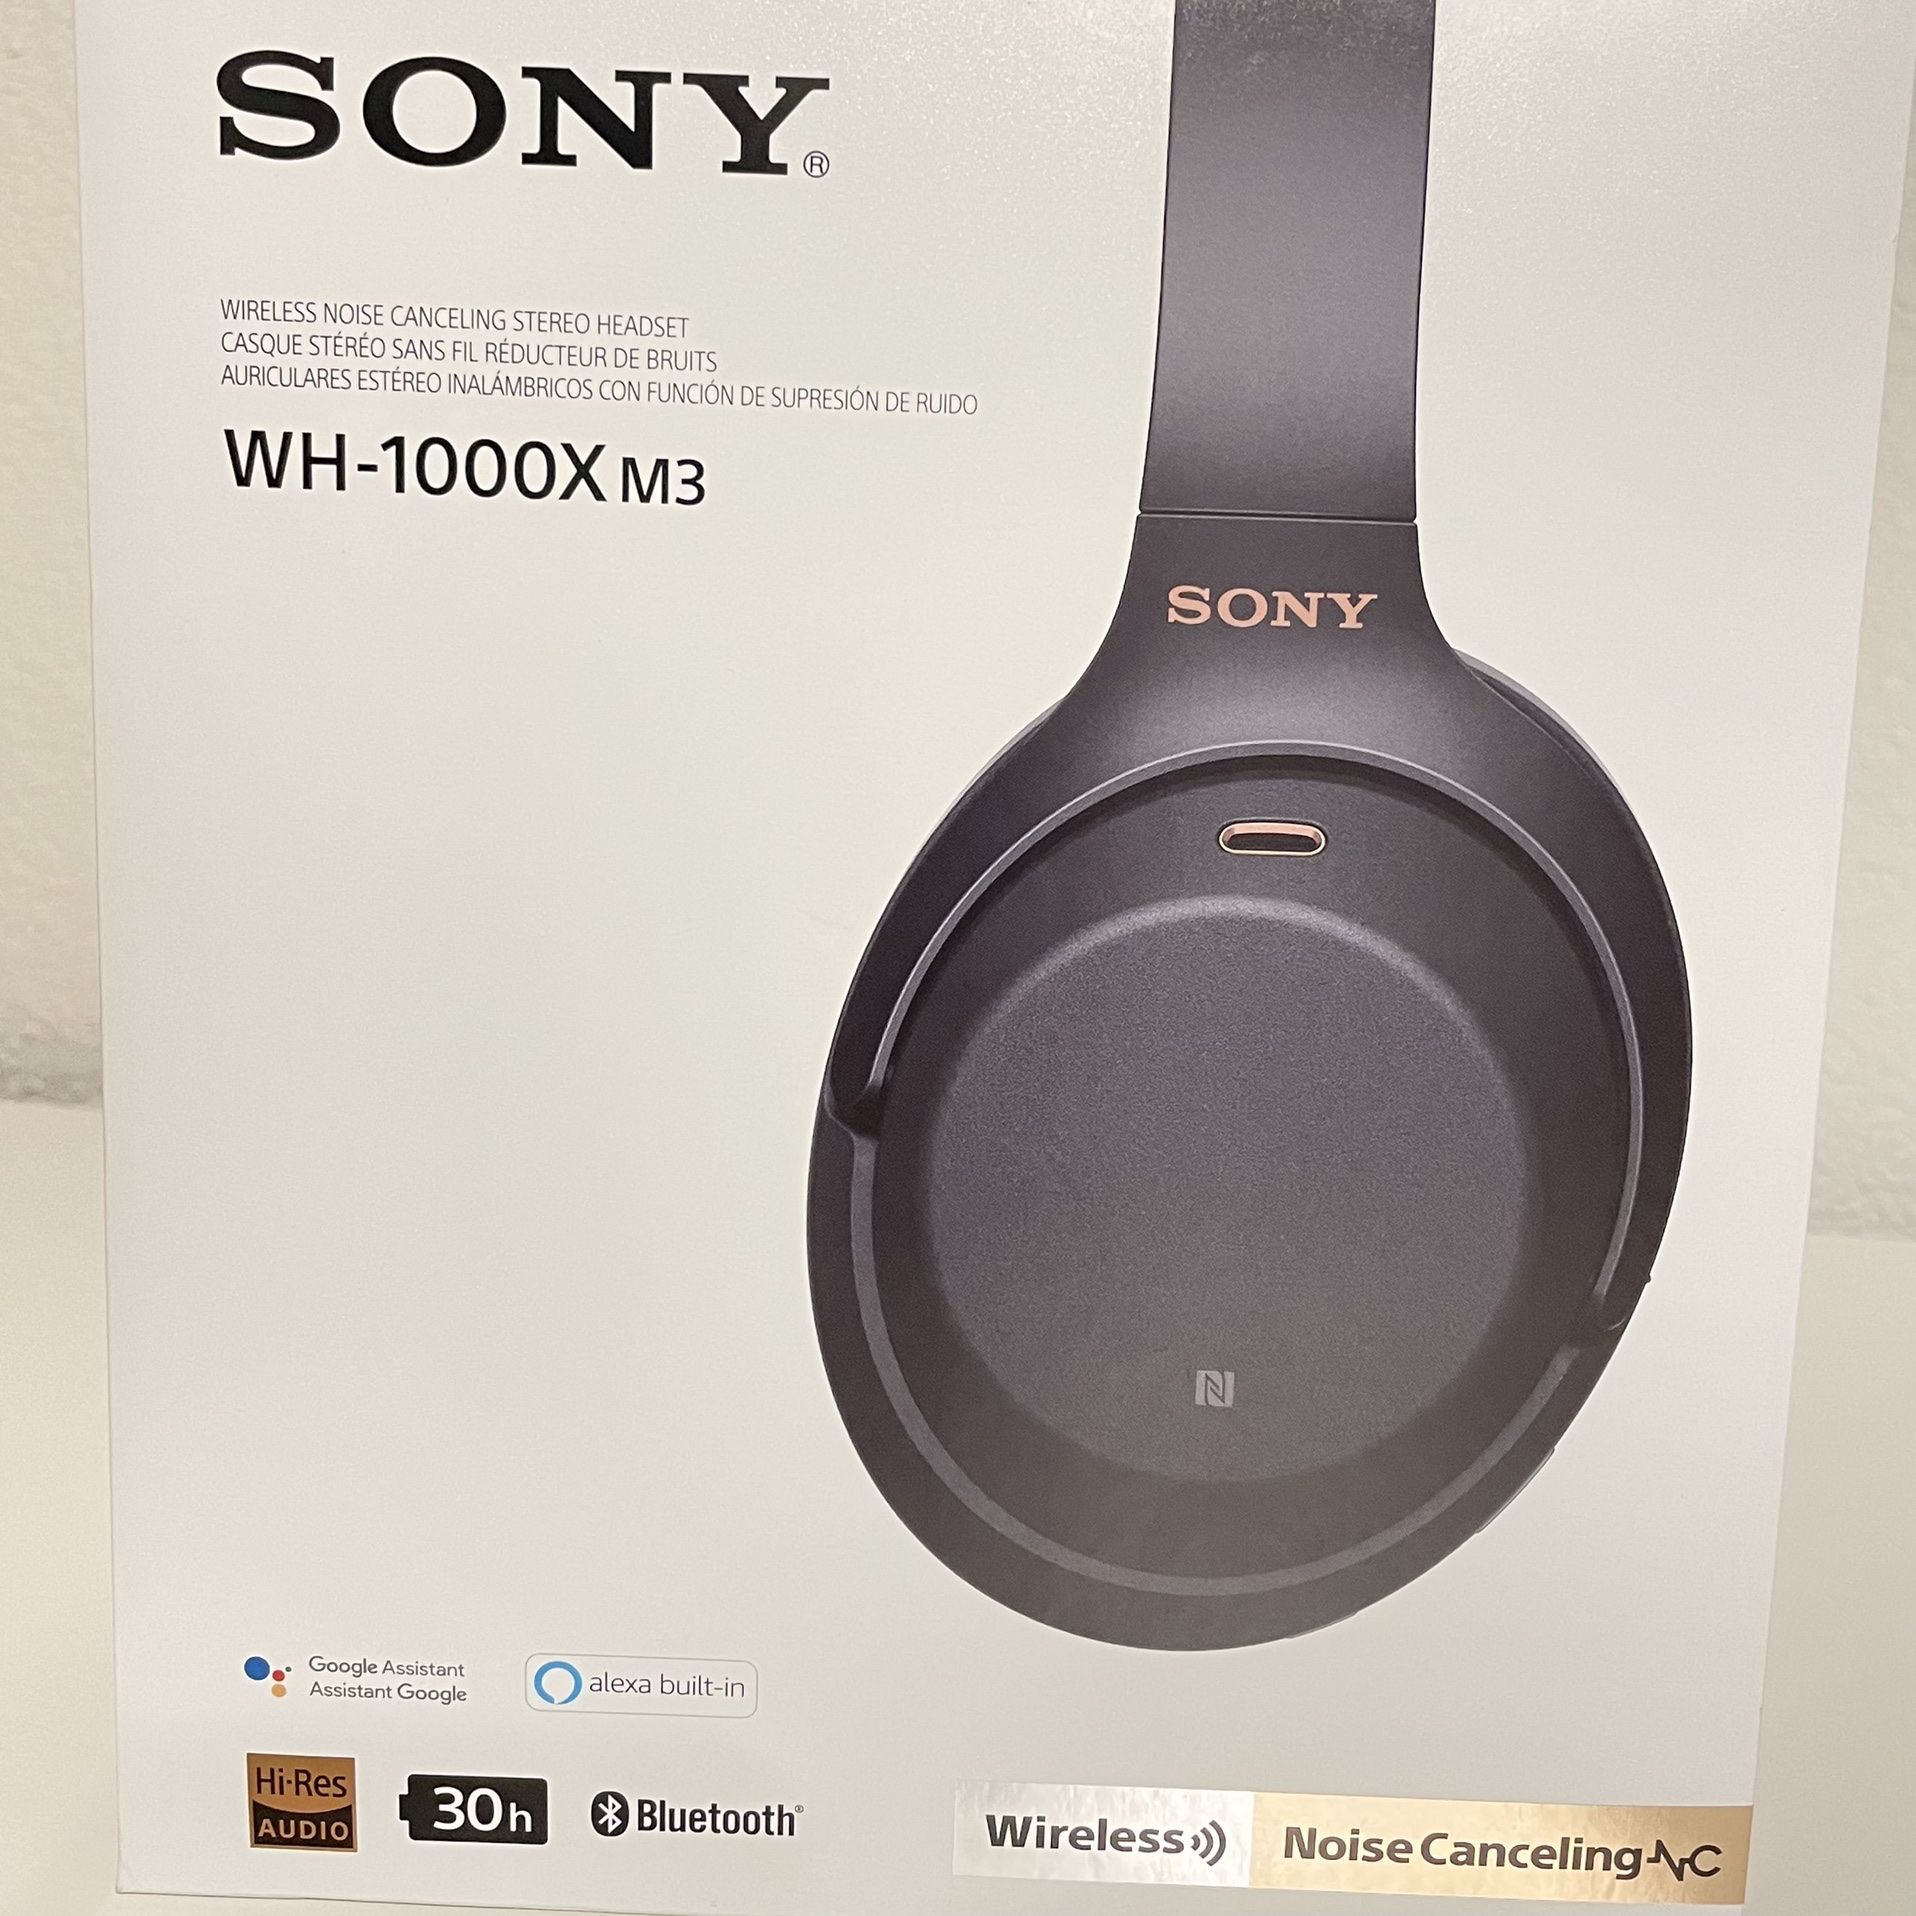 Sony WH-1000X m3 Wireless Headphone